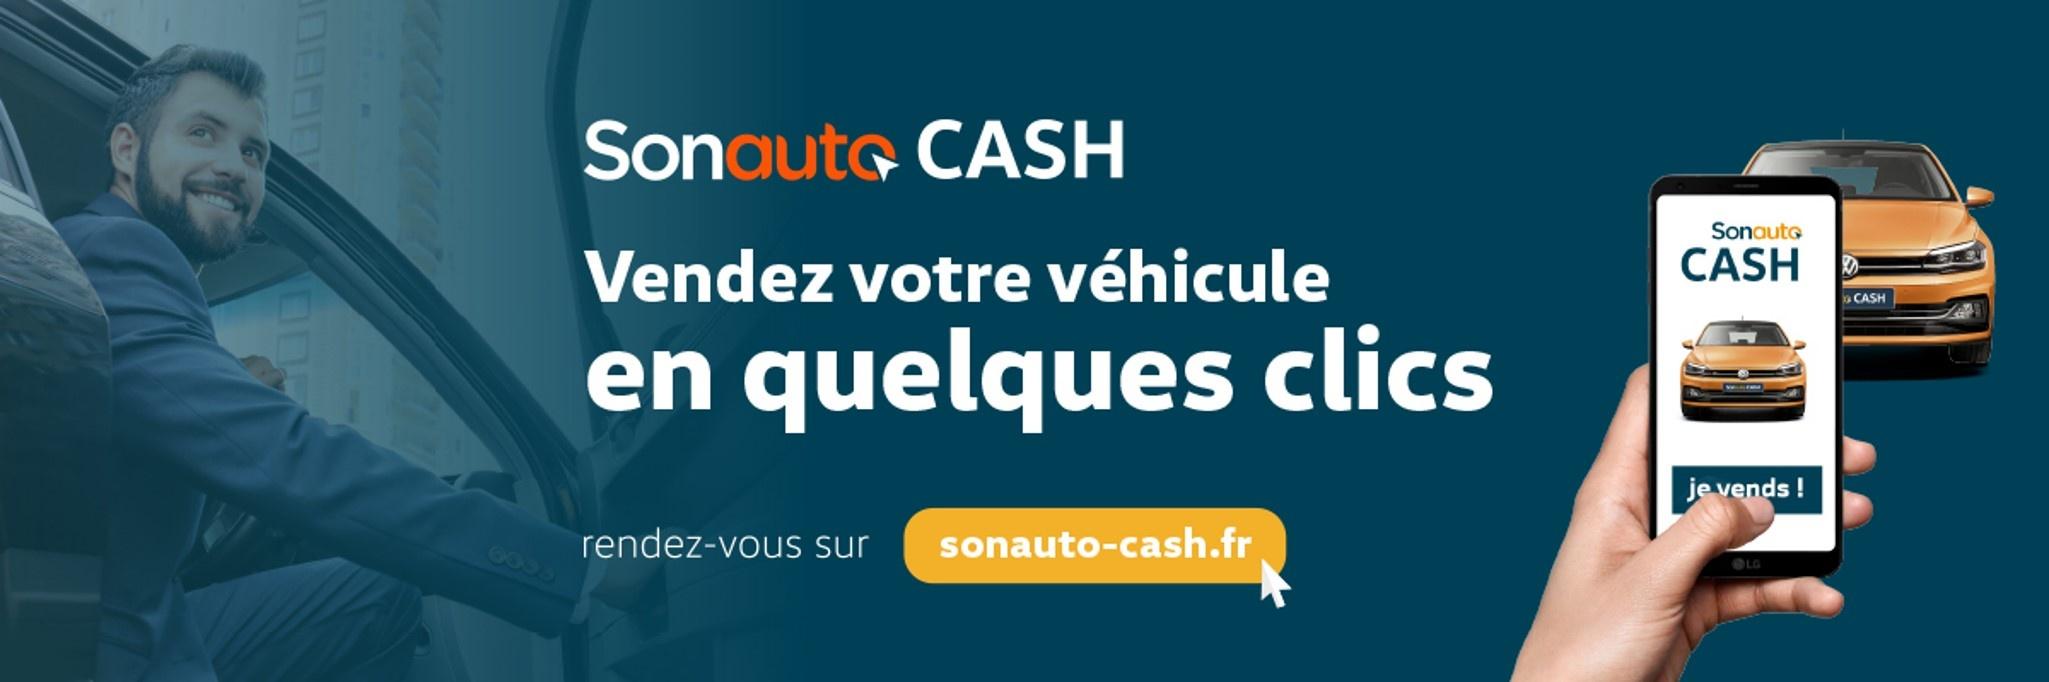 CAR - SKODA Nice - Vendez votre véhicule en quelques clics avec Sonauto Cash